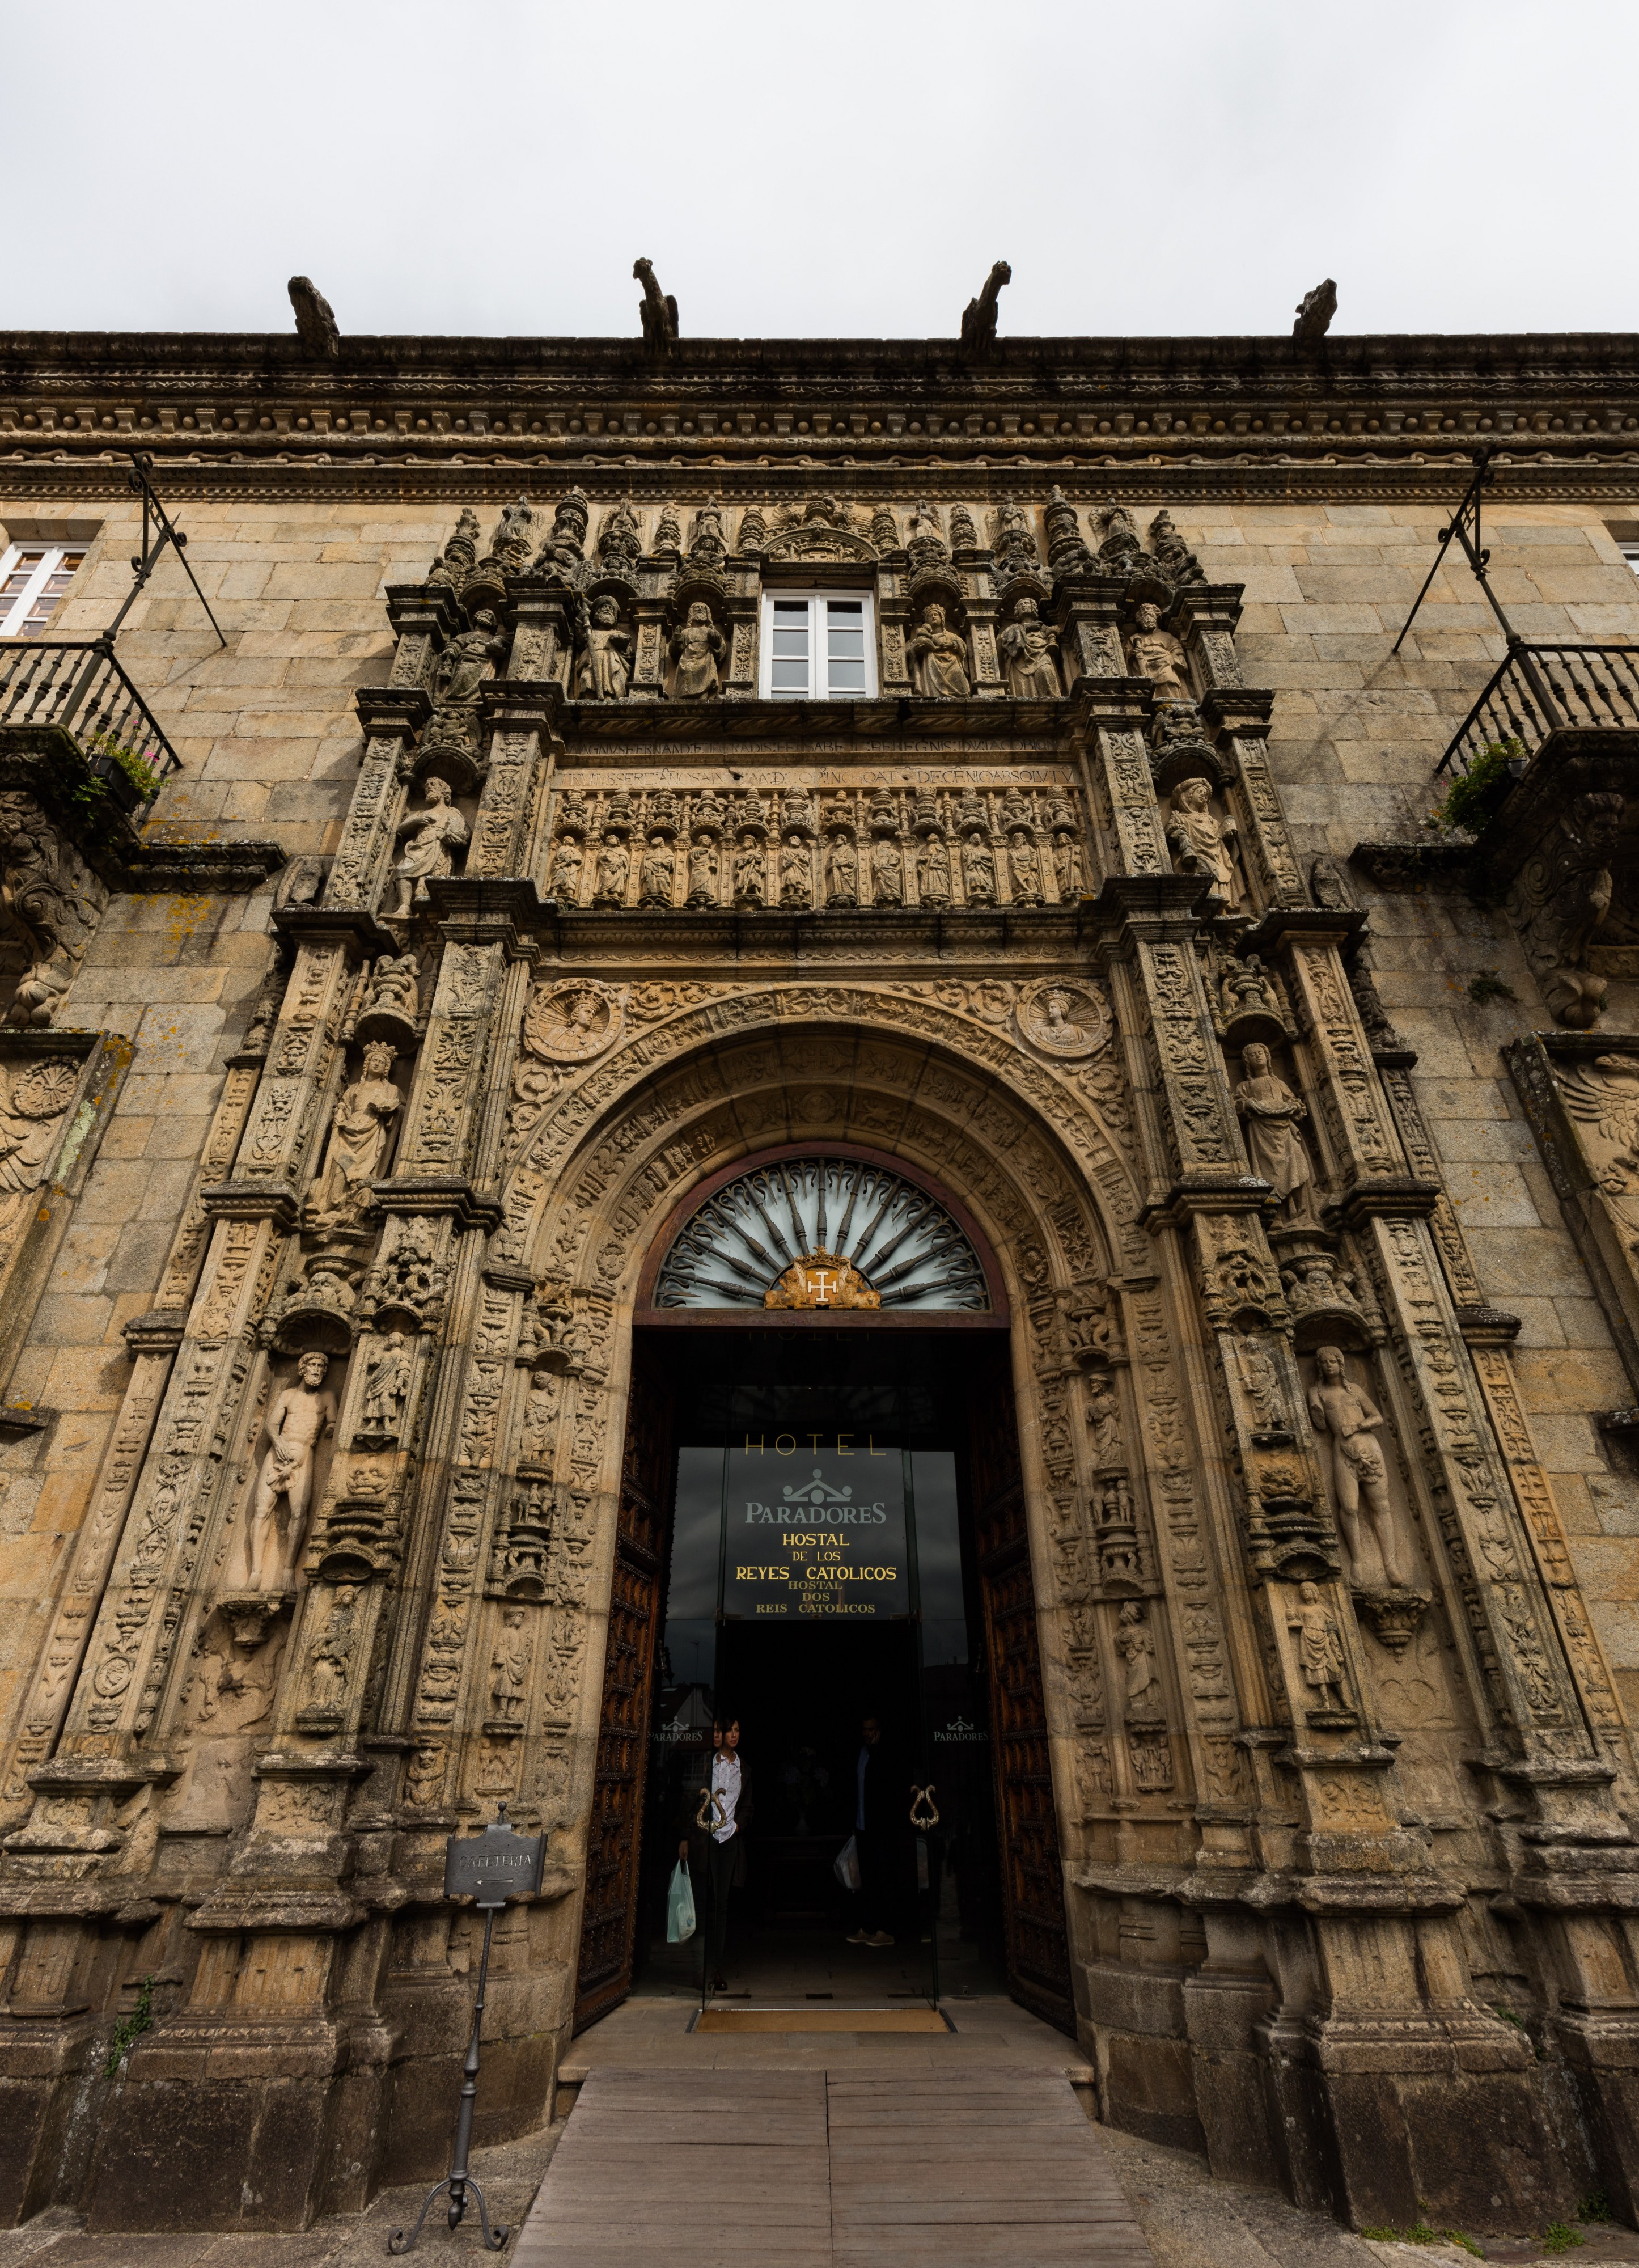 Hostal de los Reyes Católicos, Santiago de Compostela, España, 2015-09-23, DD 54